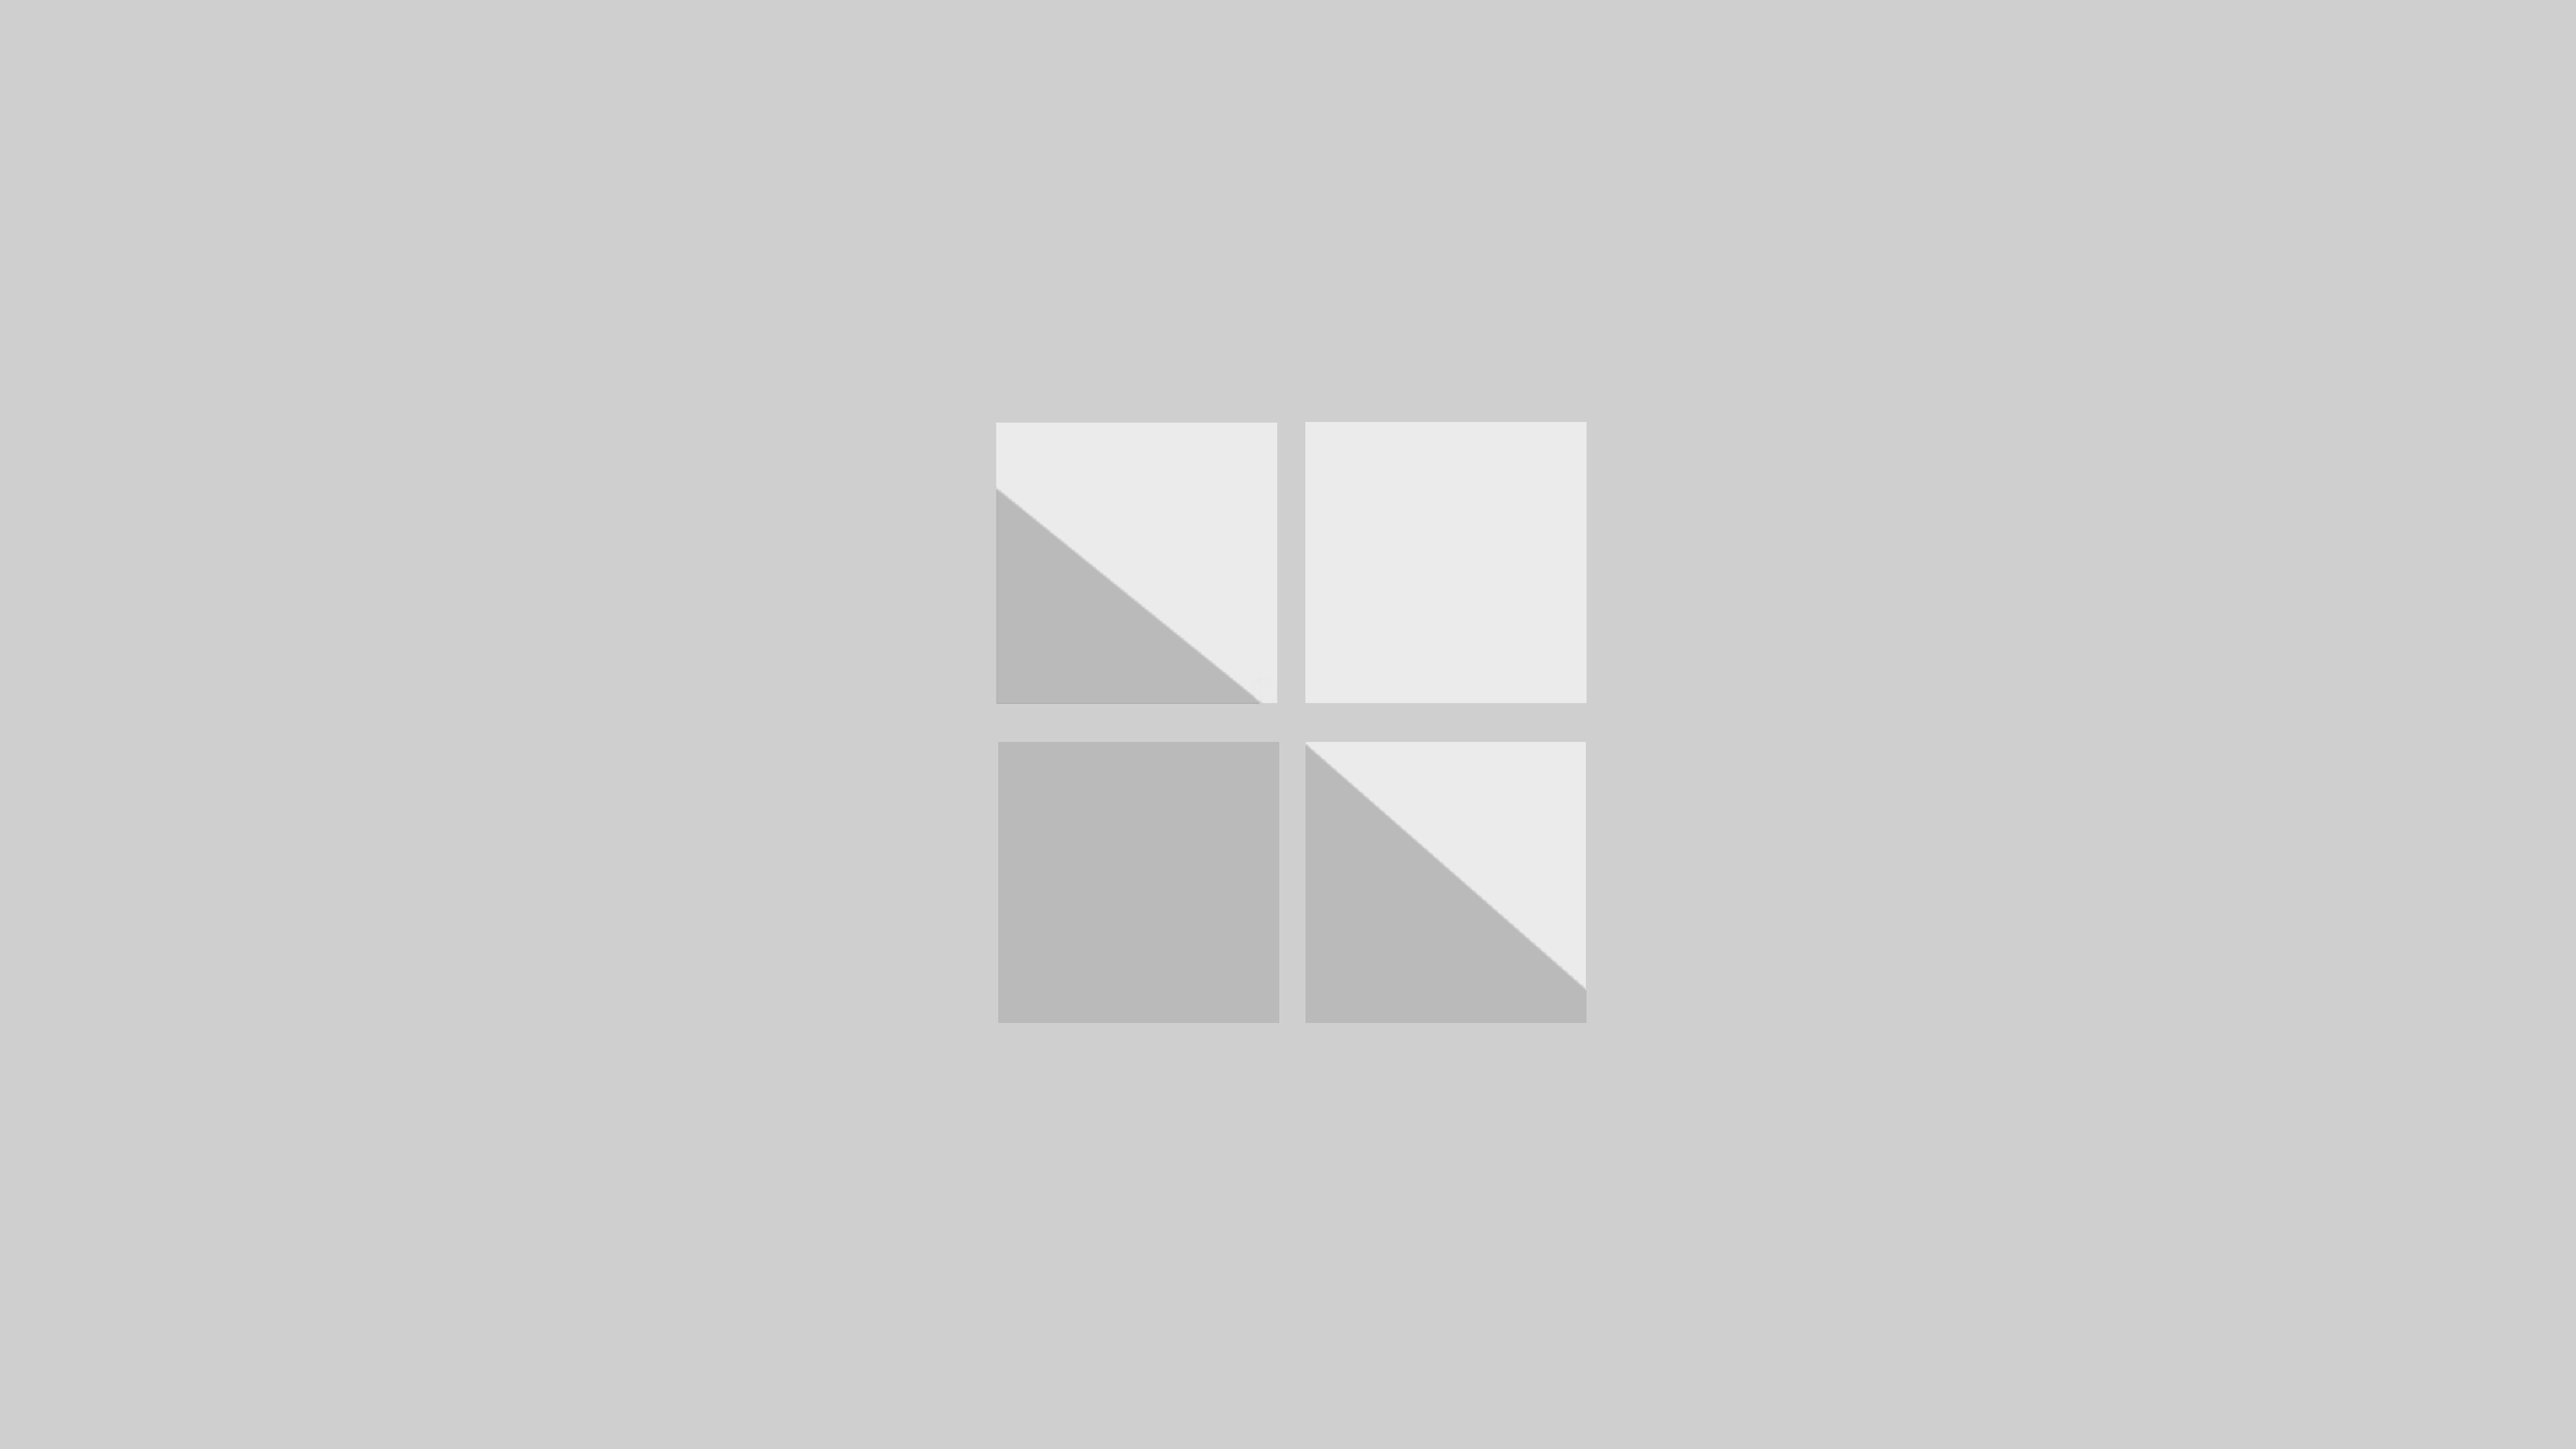 Microsoft Surface Book Logo - Microsoft Surface Book